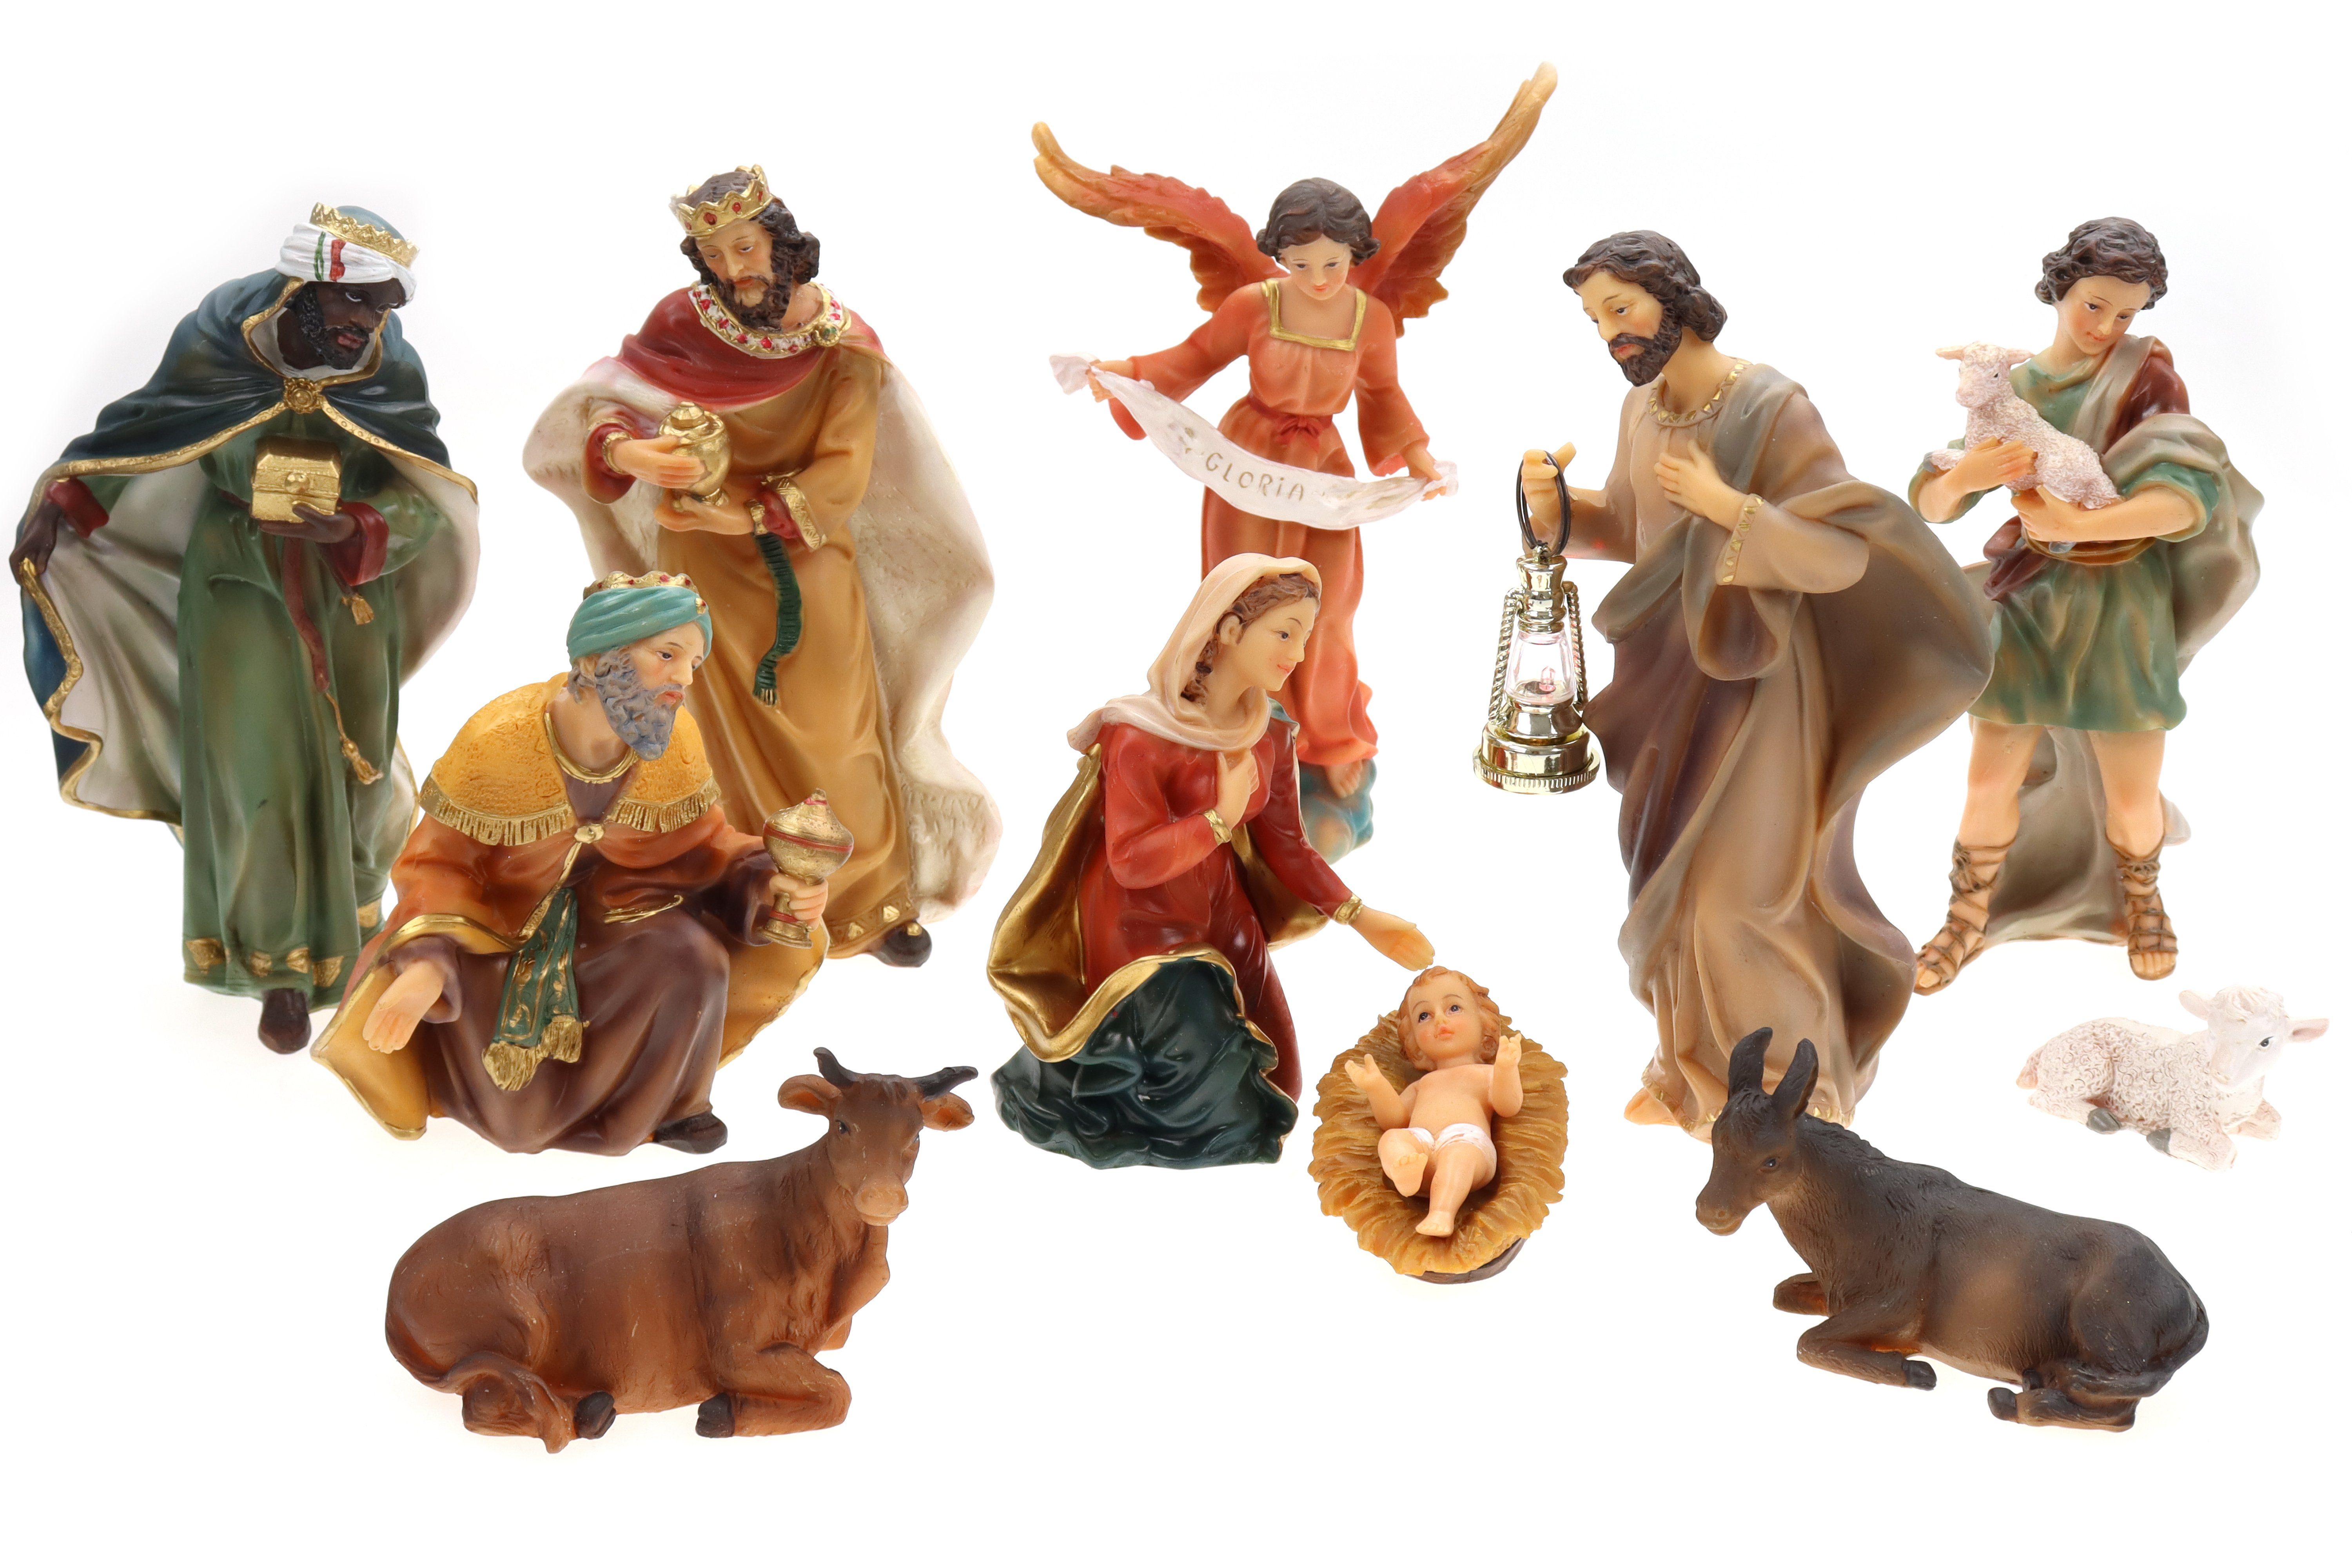 ELLUG Krippenfigur Krippenfiguren Set 11teilig, Höhe bis zu 19cm Laterne mit Licht, Weihnachtskrippe Figuren Krippenzubehör Weihnachtsdeko, aus Polyresin (11 St)